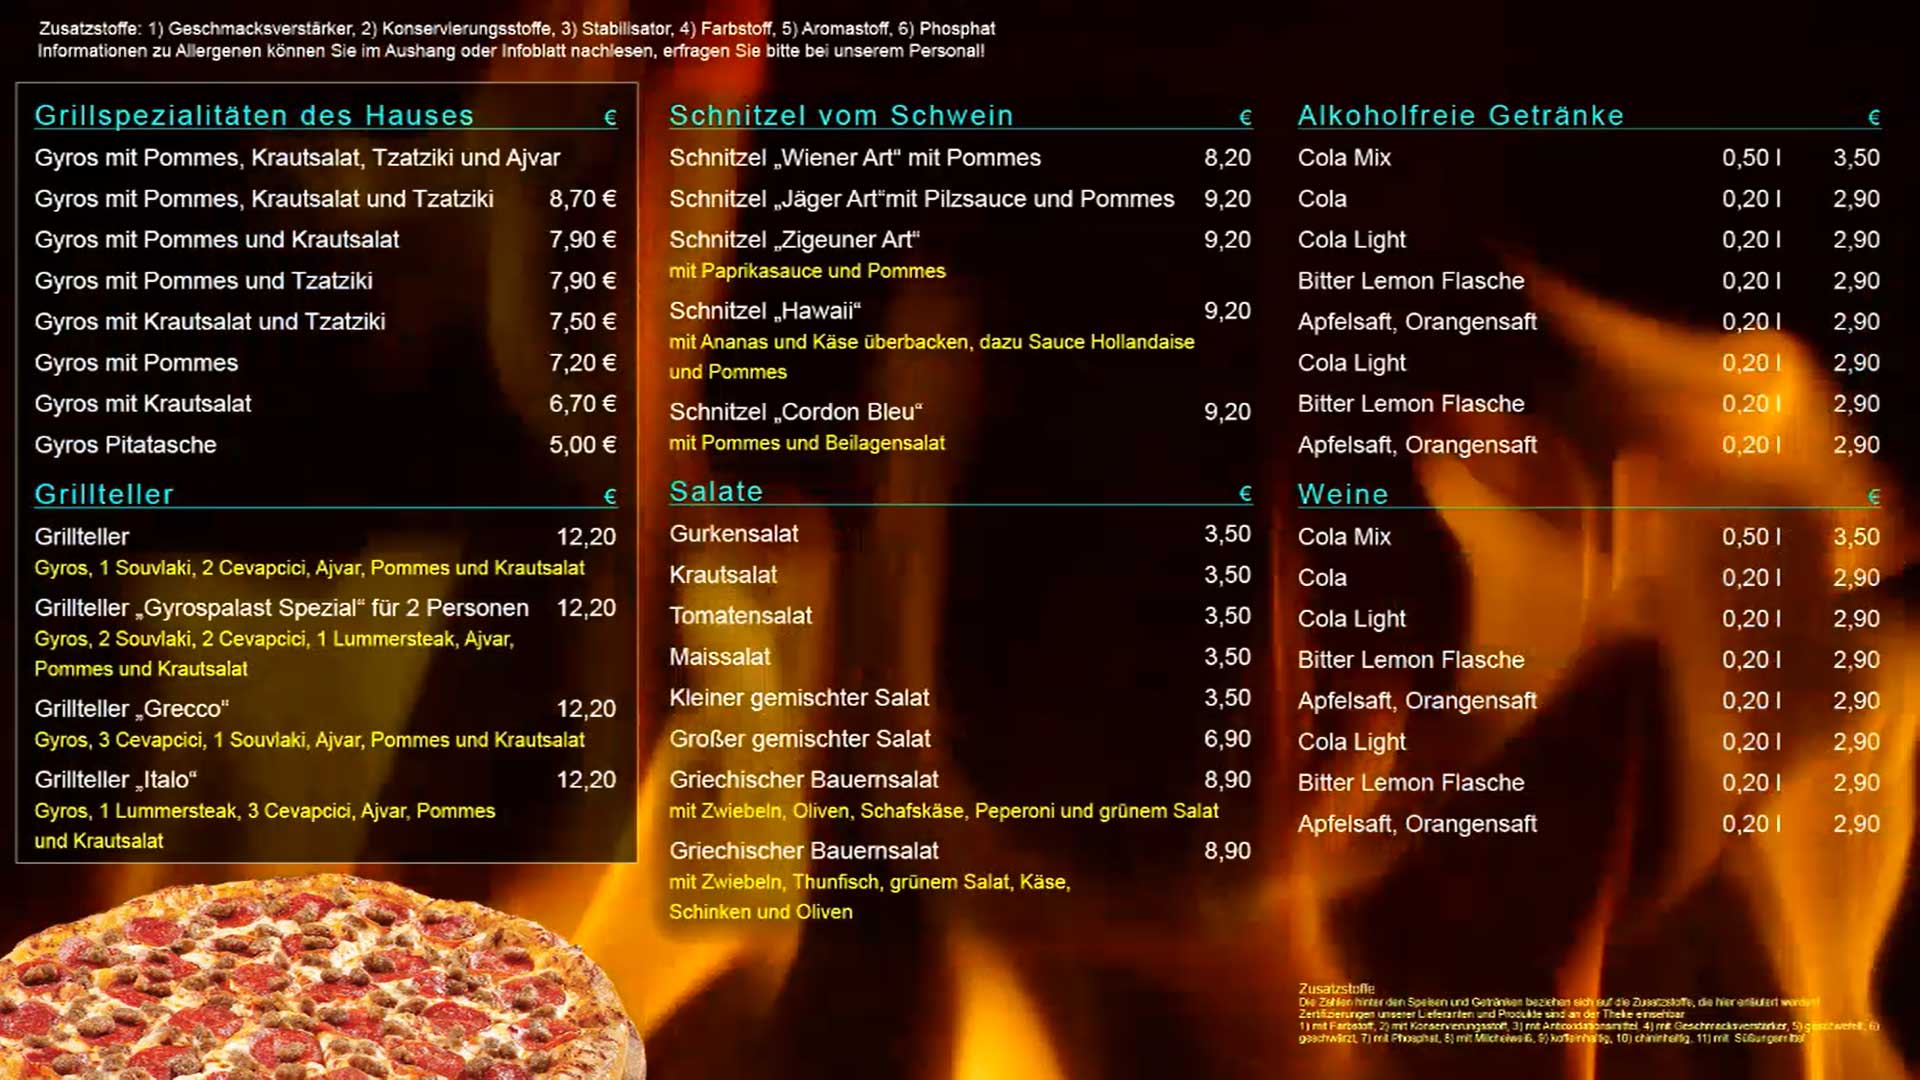 Speiseliste-Menuetafel-Flammen-Animation-Digital-Signage-Bildschirm-WerbungDNZ-Networks